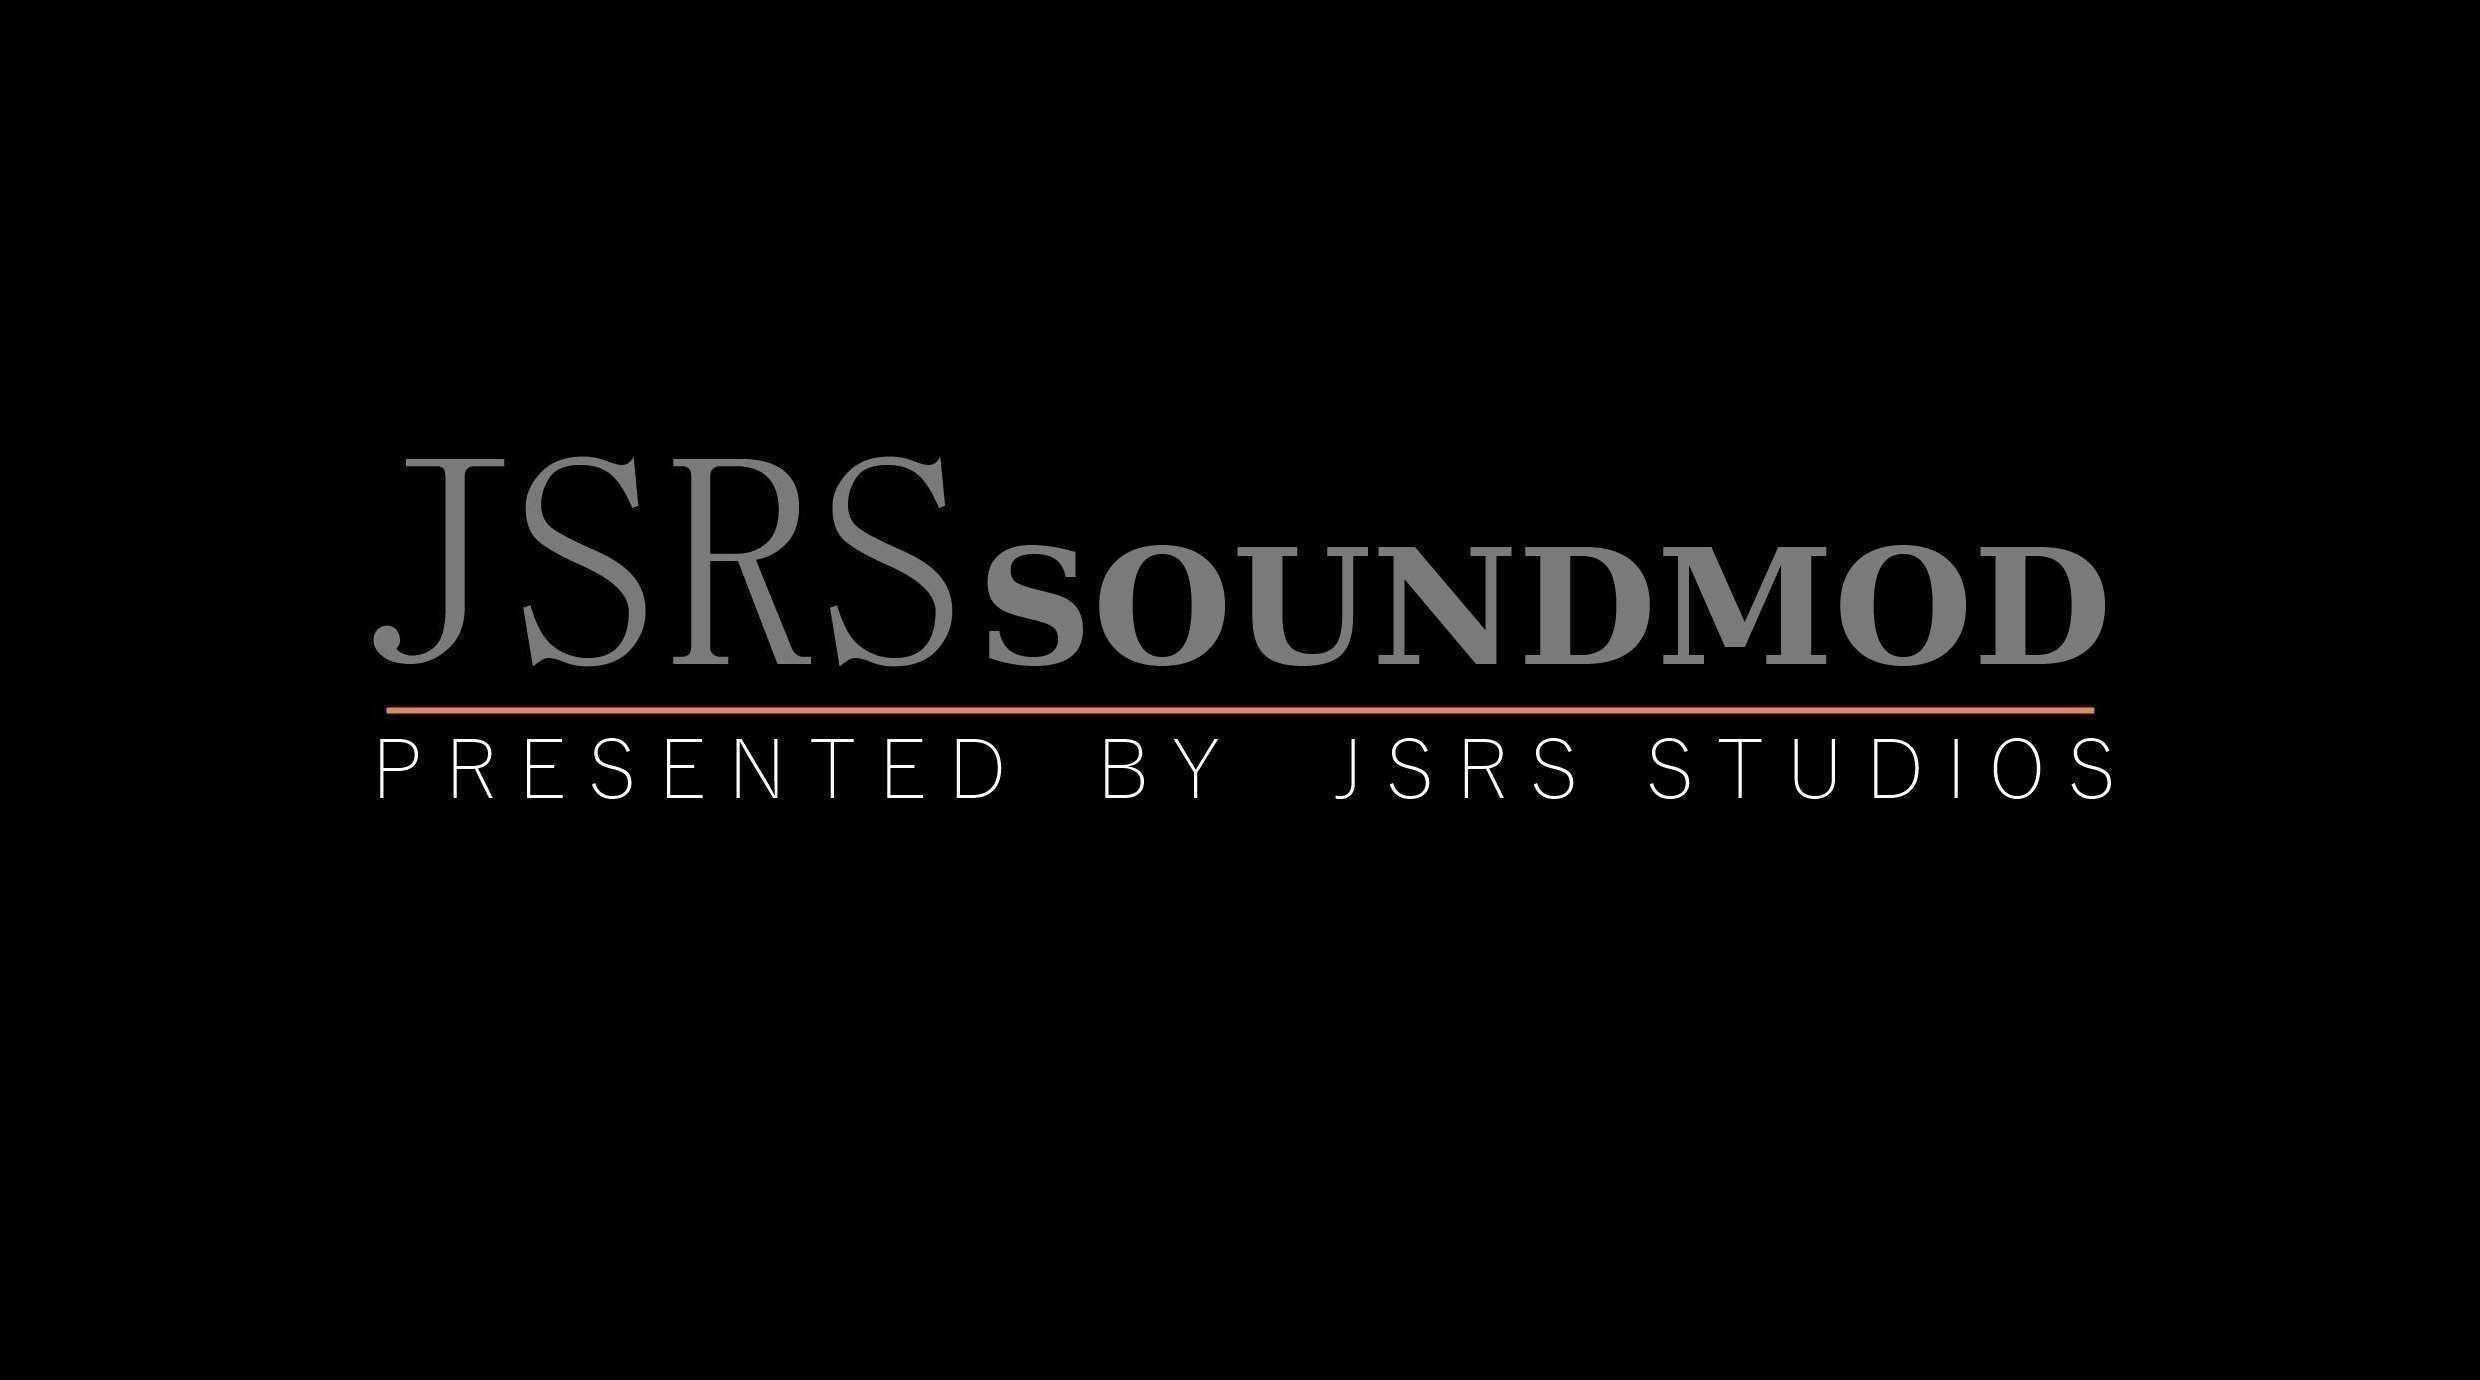 Звуковой мод JSRS SOUNDMOD для ARMA 3